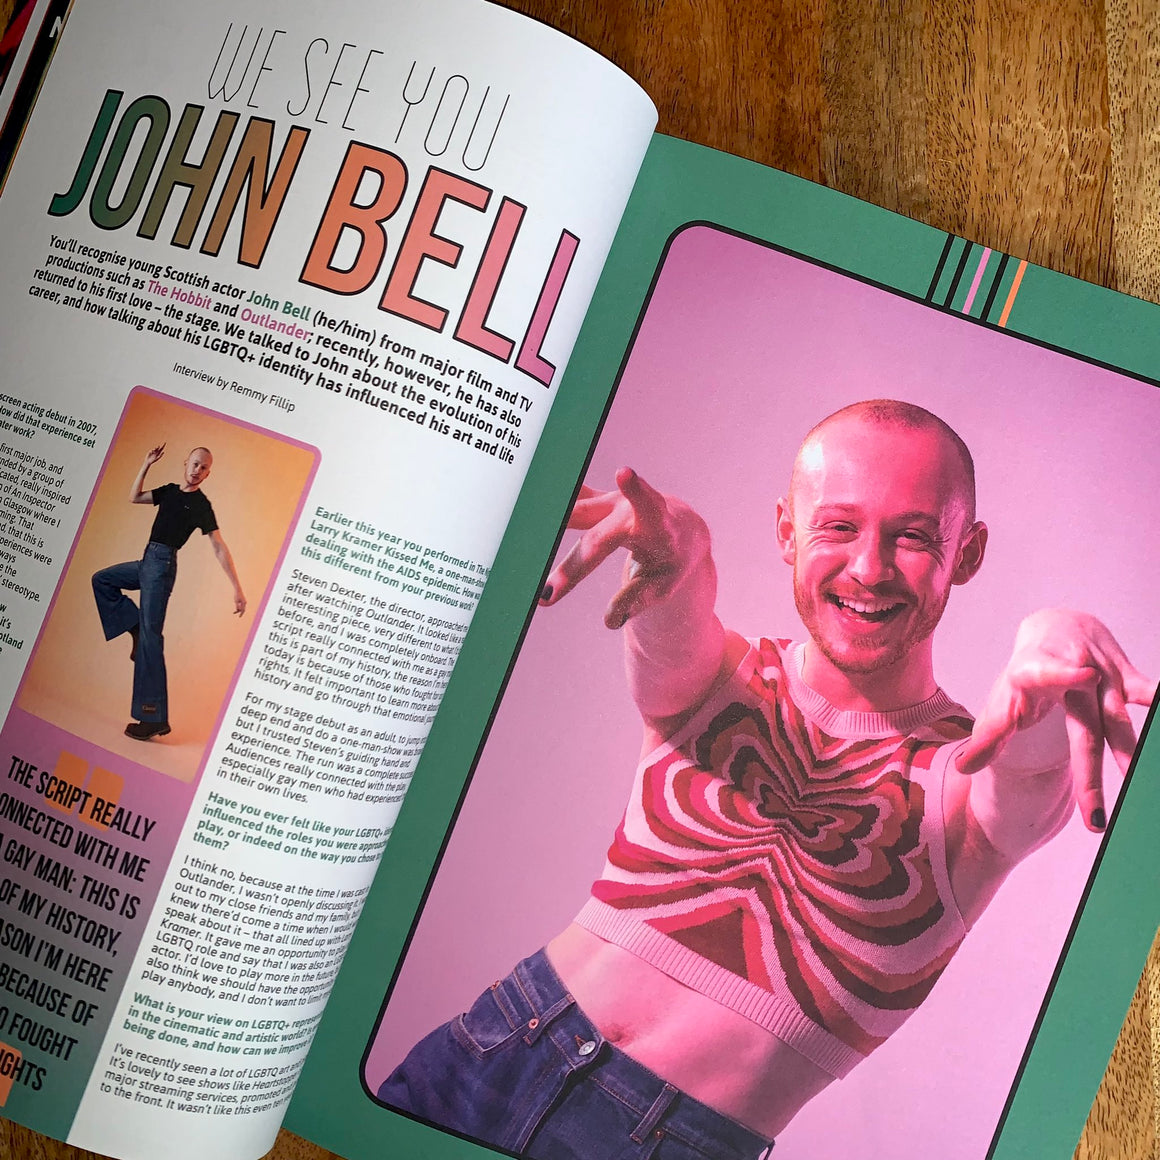 SOMEWHERE FOR US Magazine #9 John Bell Outlander